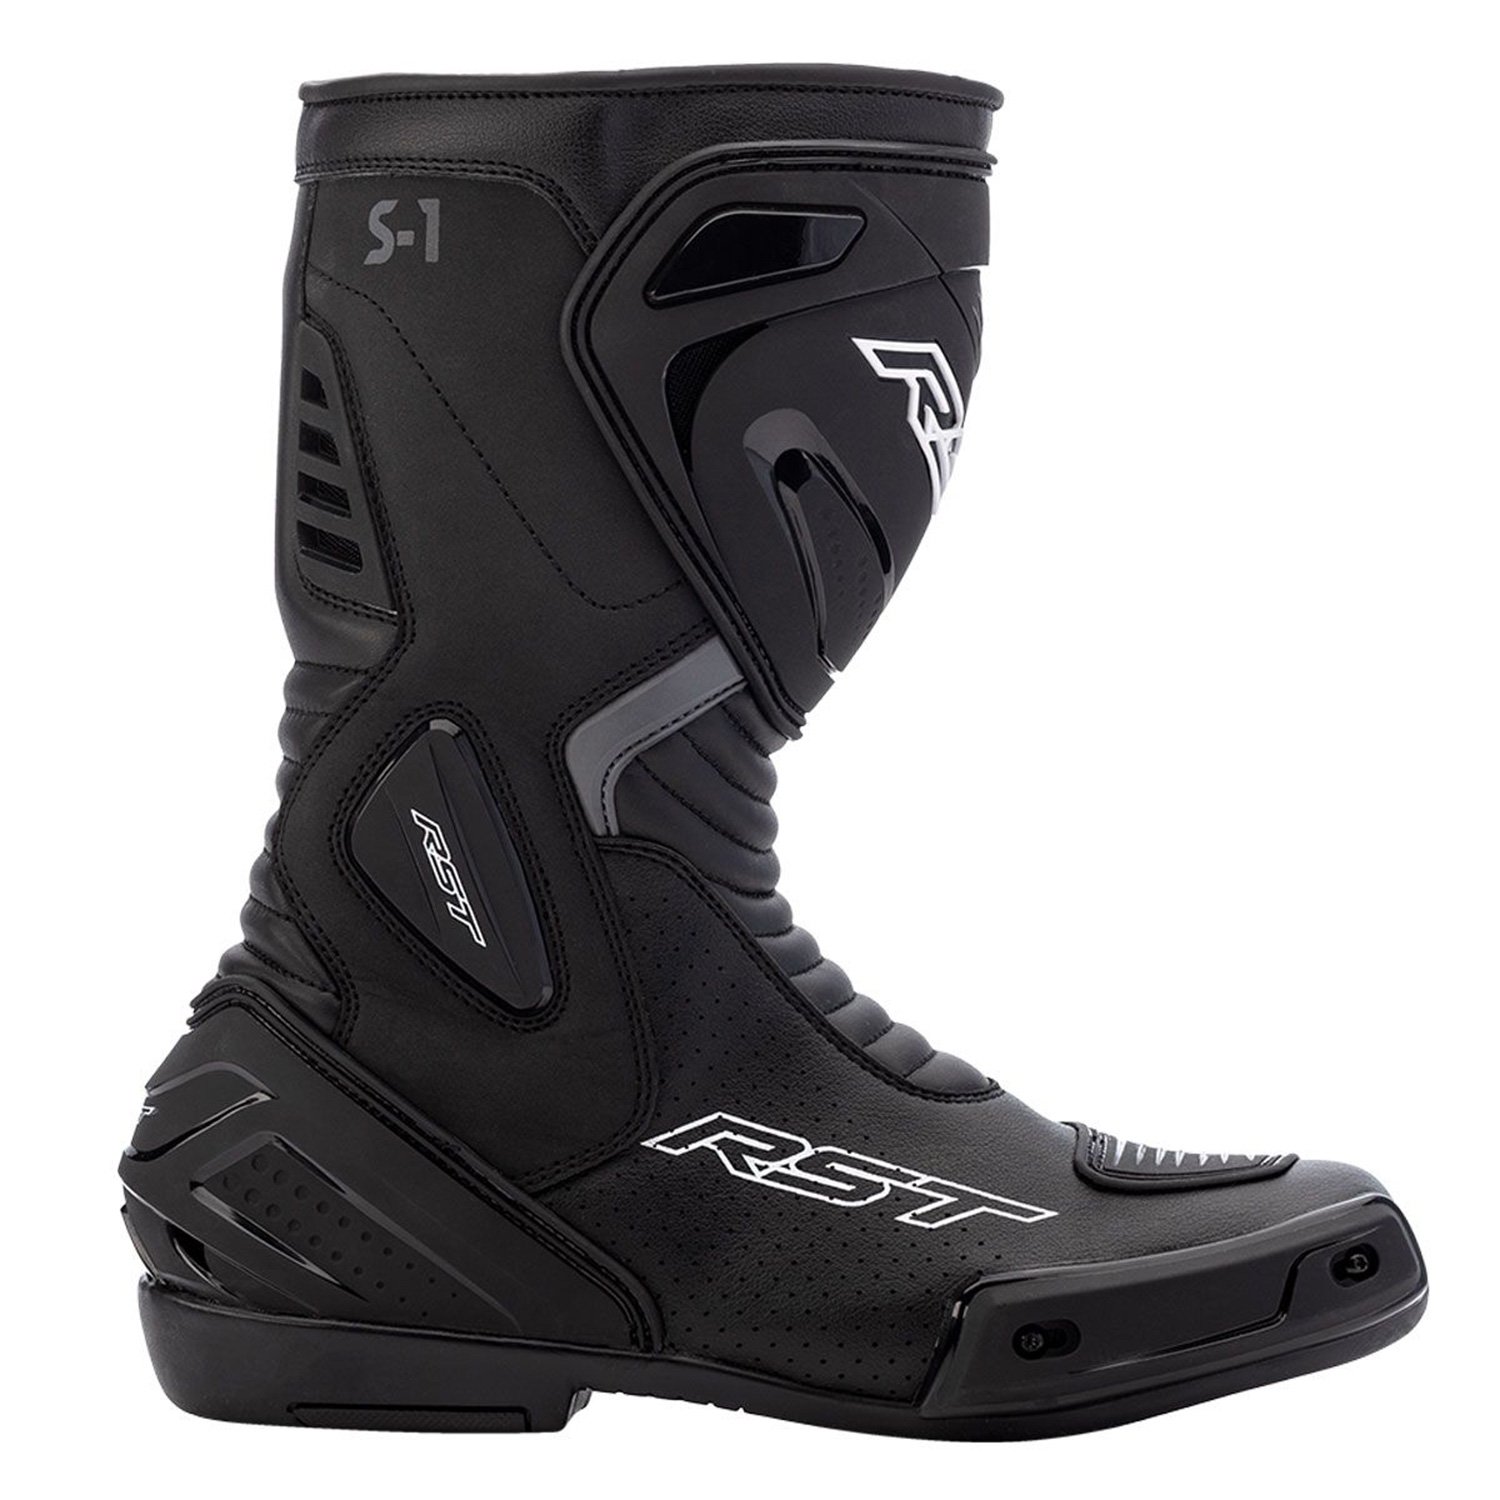 Image of RST S1 Mens Ce Boot Black Size 41 EN